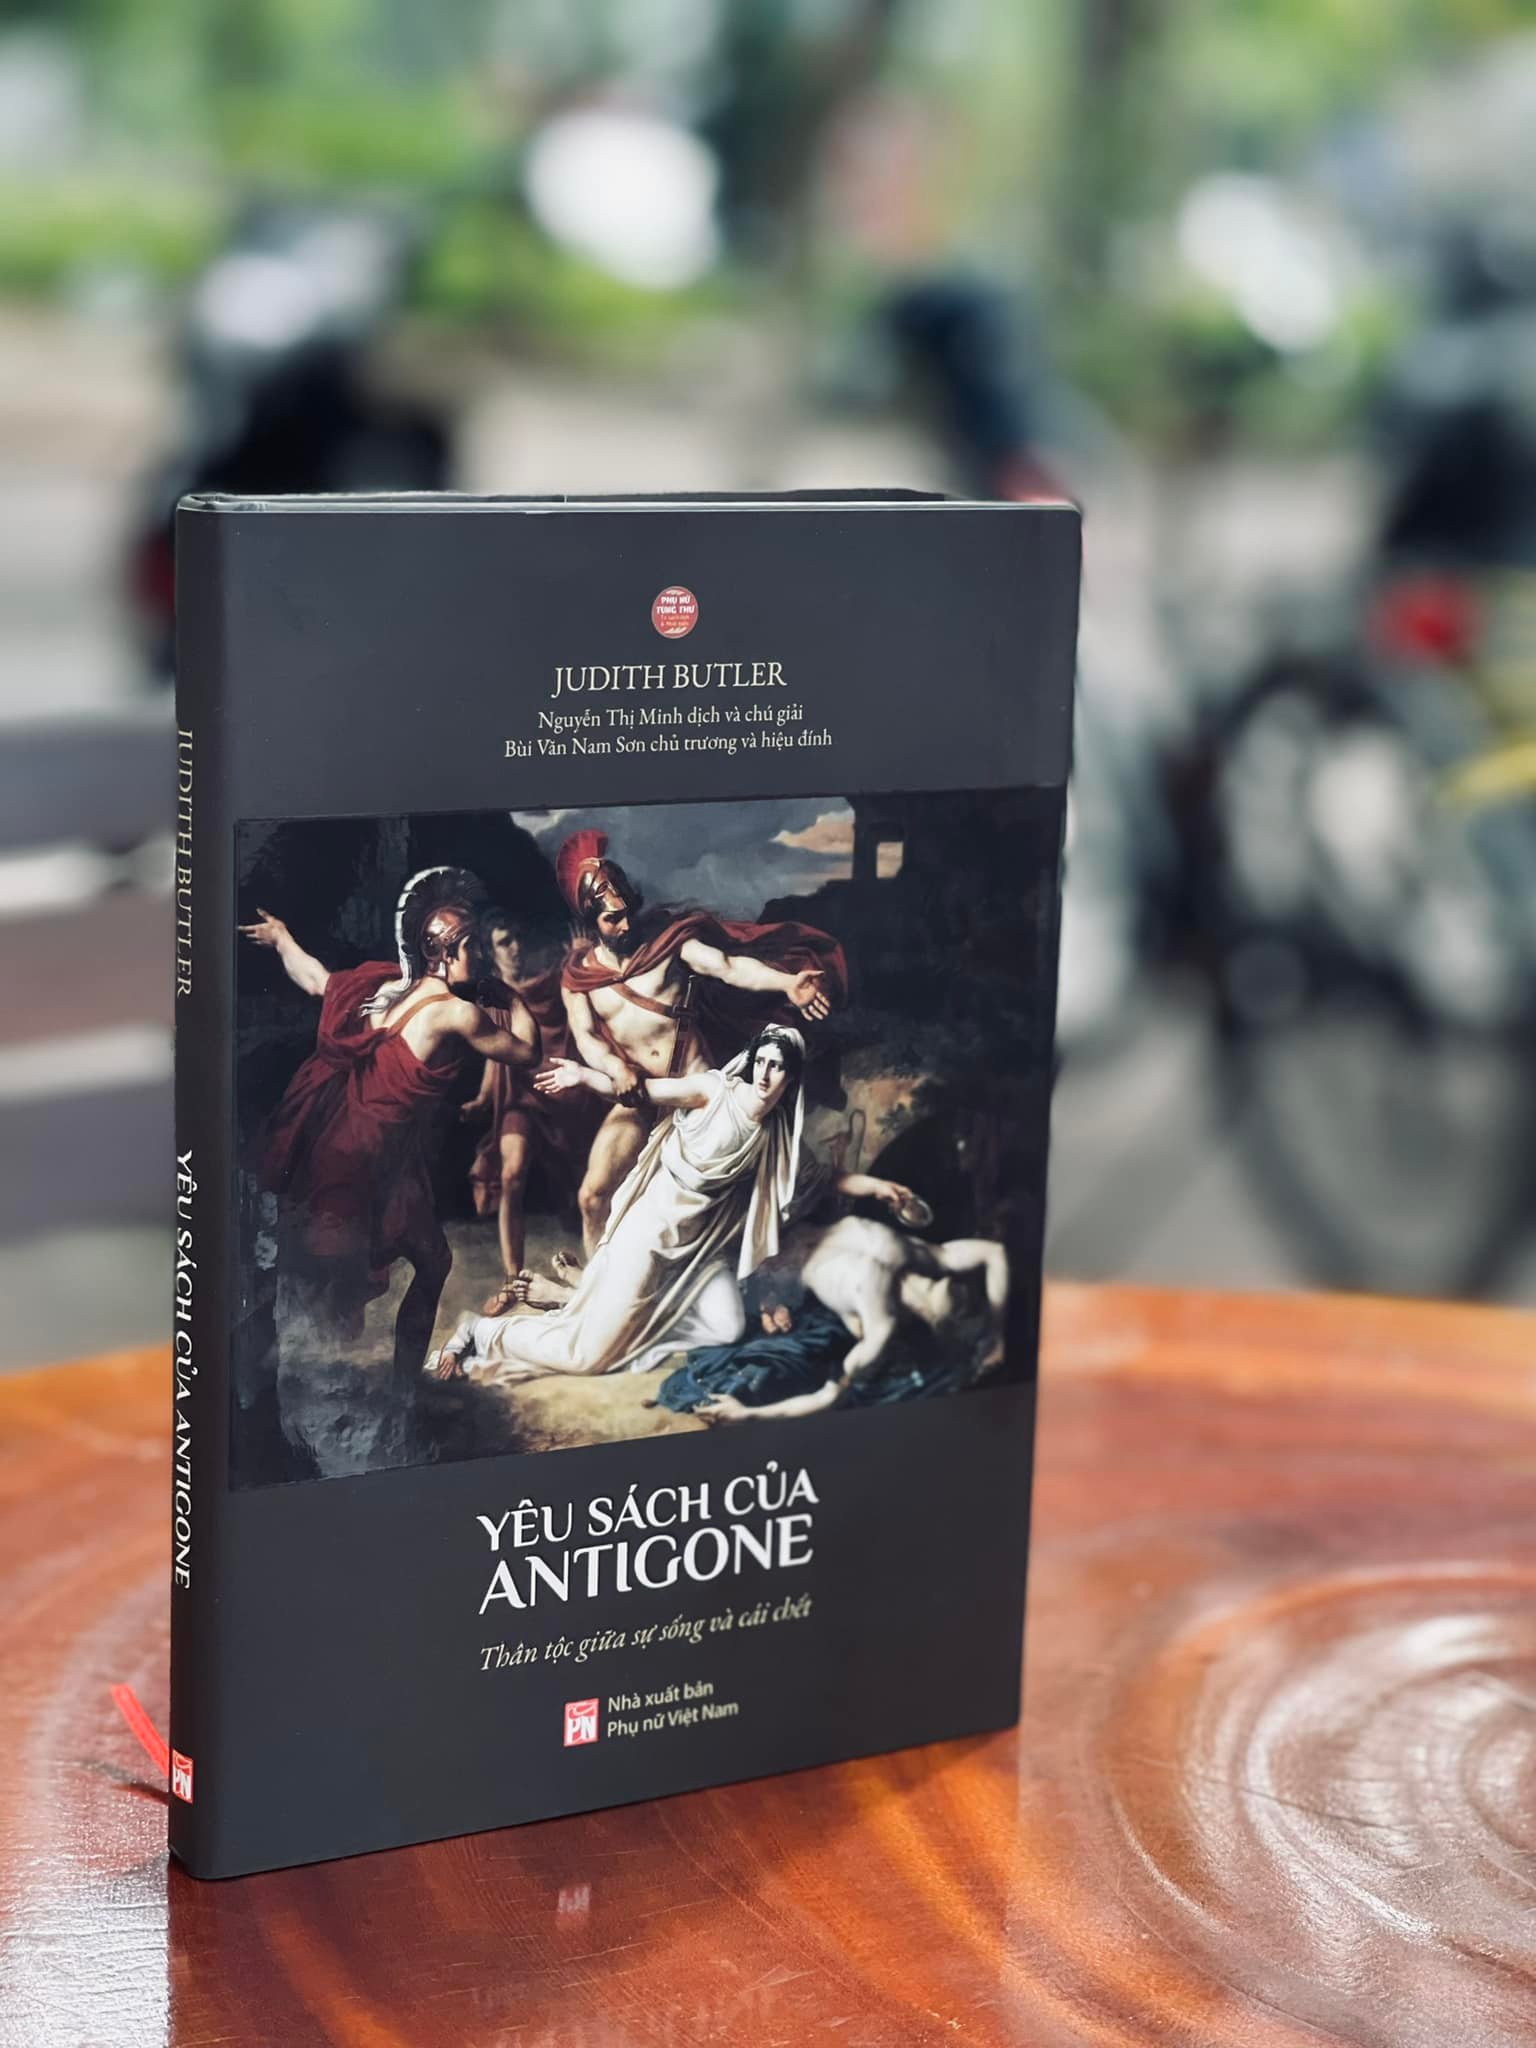 Yêu Sách Của Antigone: Thân Tộc Giữa Sự Sống Và Cái Chết